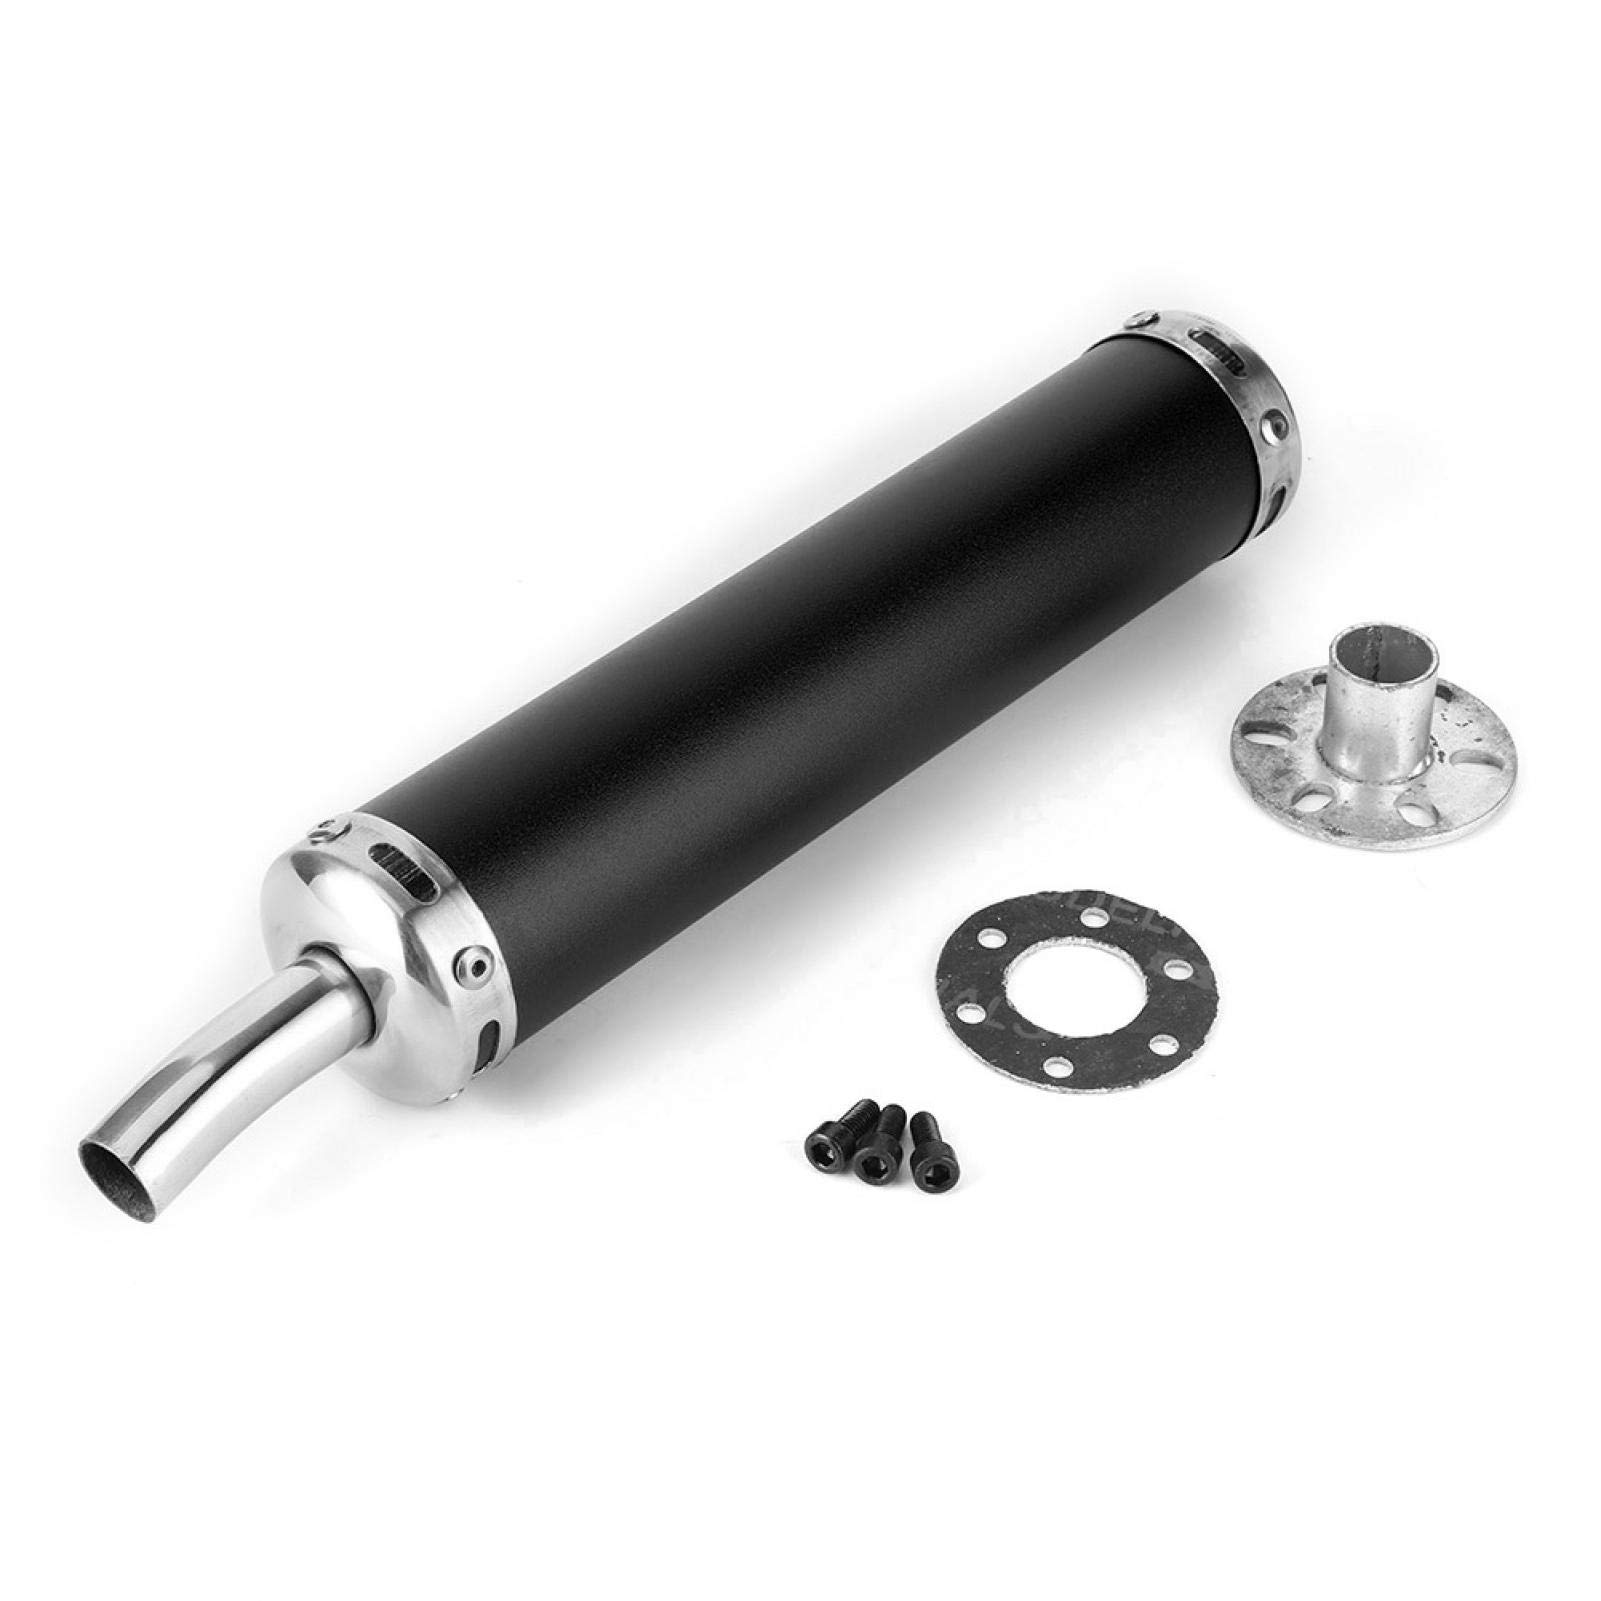 Motorrad-Auspuff, 20 mm (0,8 Zoll) modifizierte Teile Edelstahl-Schalldämpfer aus Universalstahl Glaspackung Fiberglas-Schalldämpfer Resonator für 2-Ta otorrad(schwarz) von Fydun